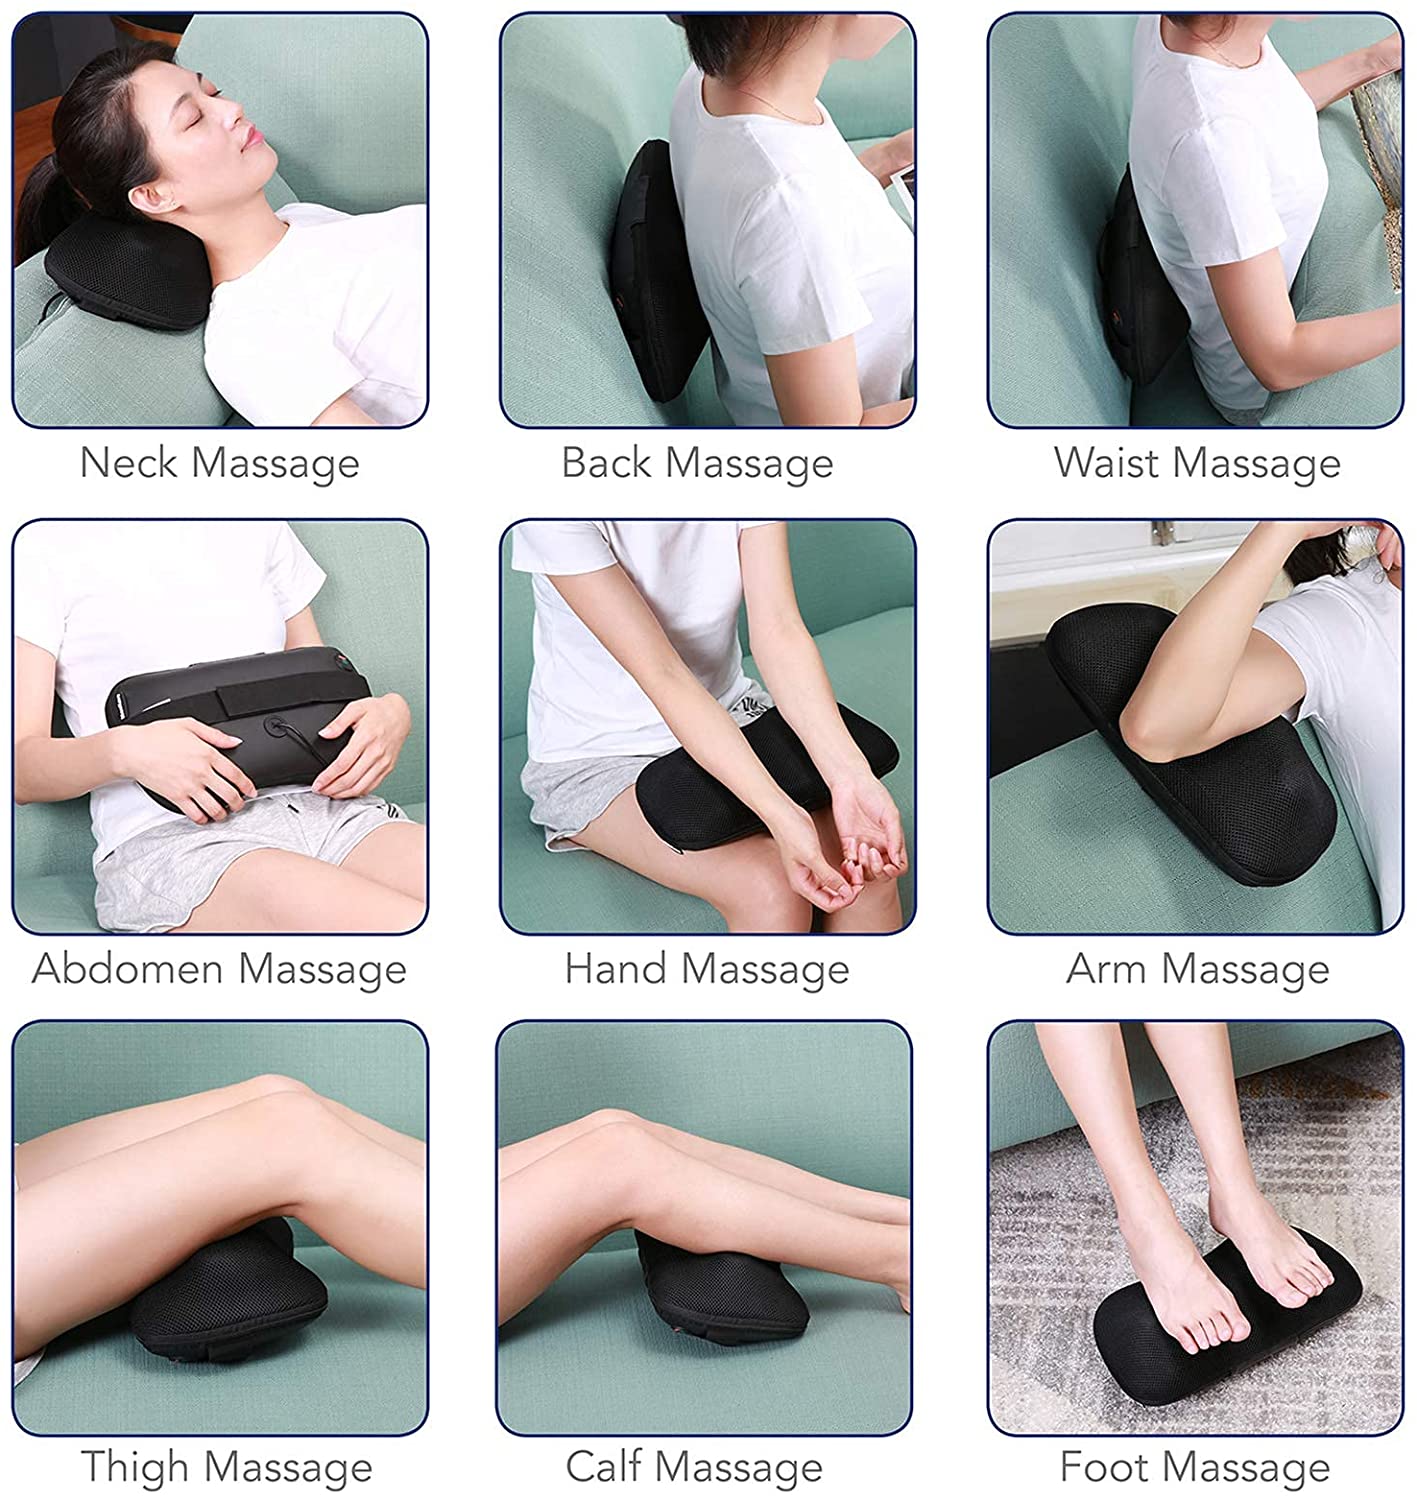 Back Massager Neck Massager Massage Pillow With Heat – MAXKARE